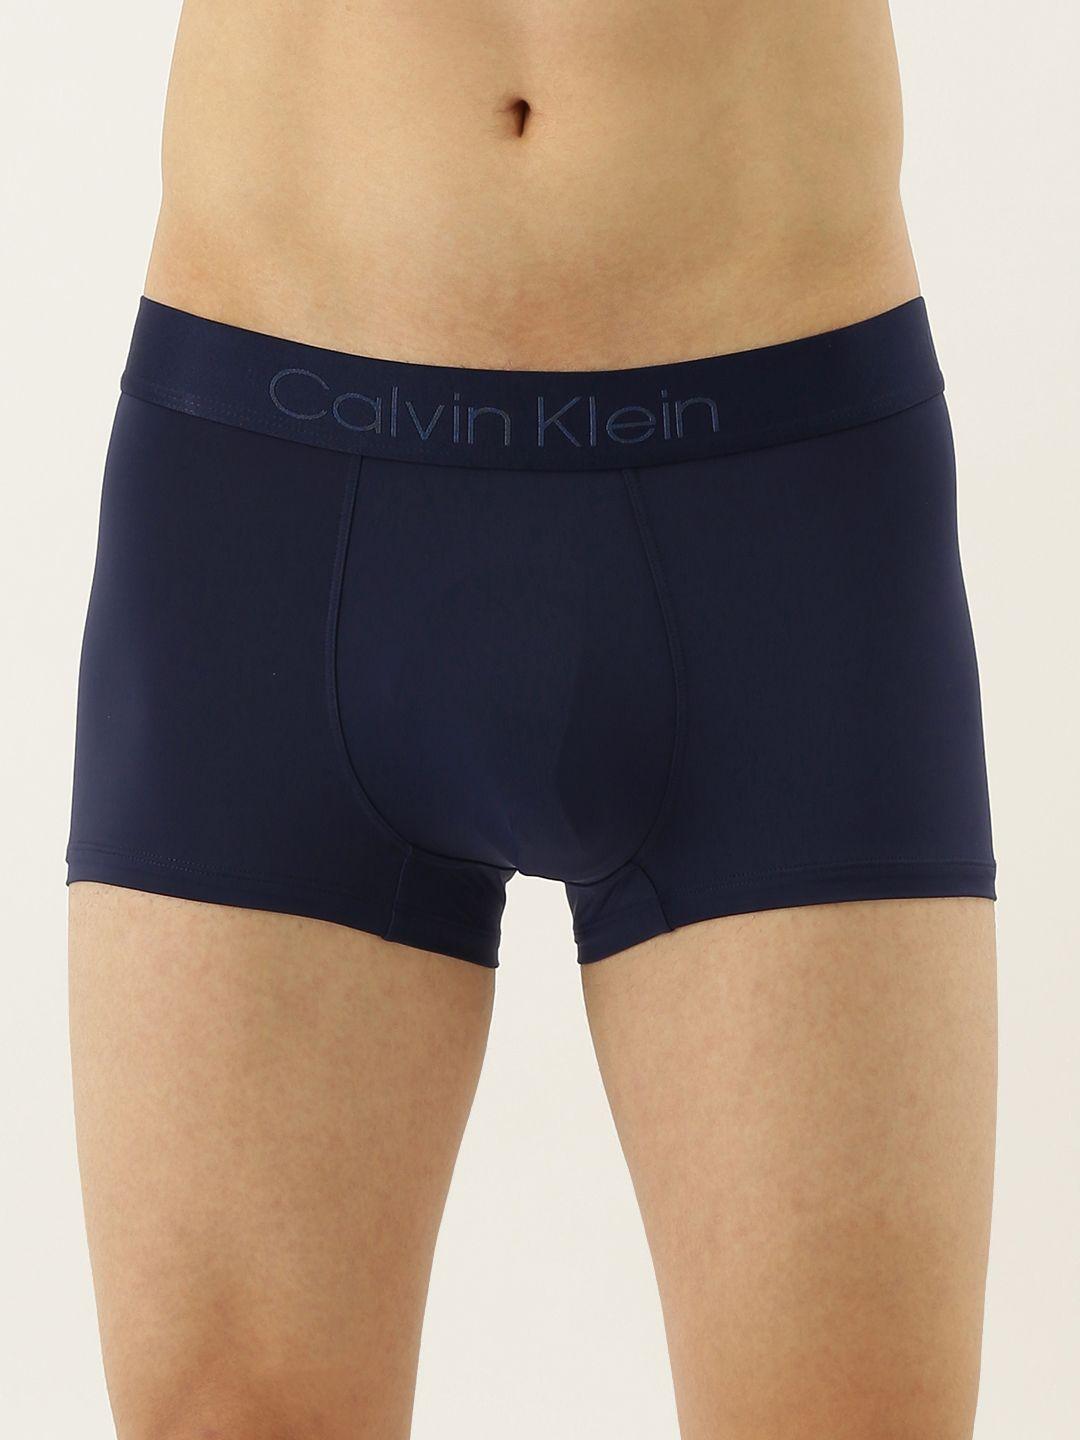 calvin klein underwear men navy blue solid trunks nb19298sb